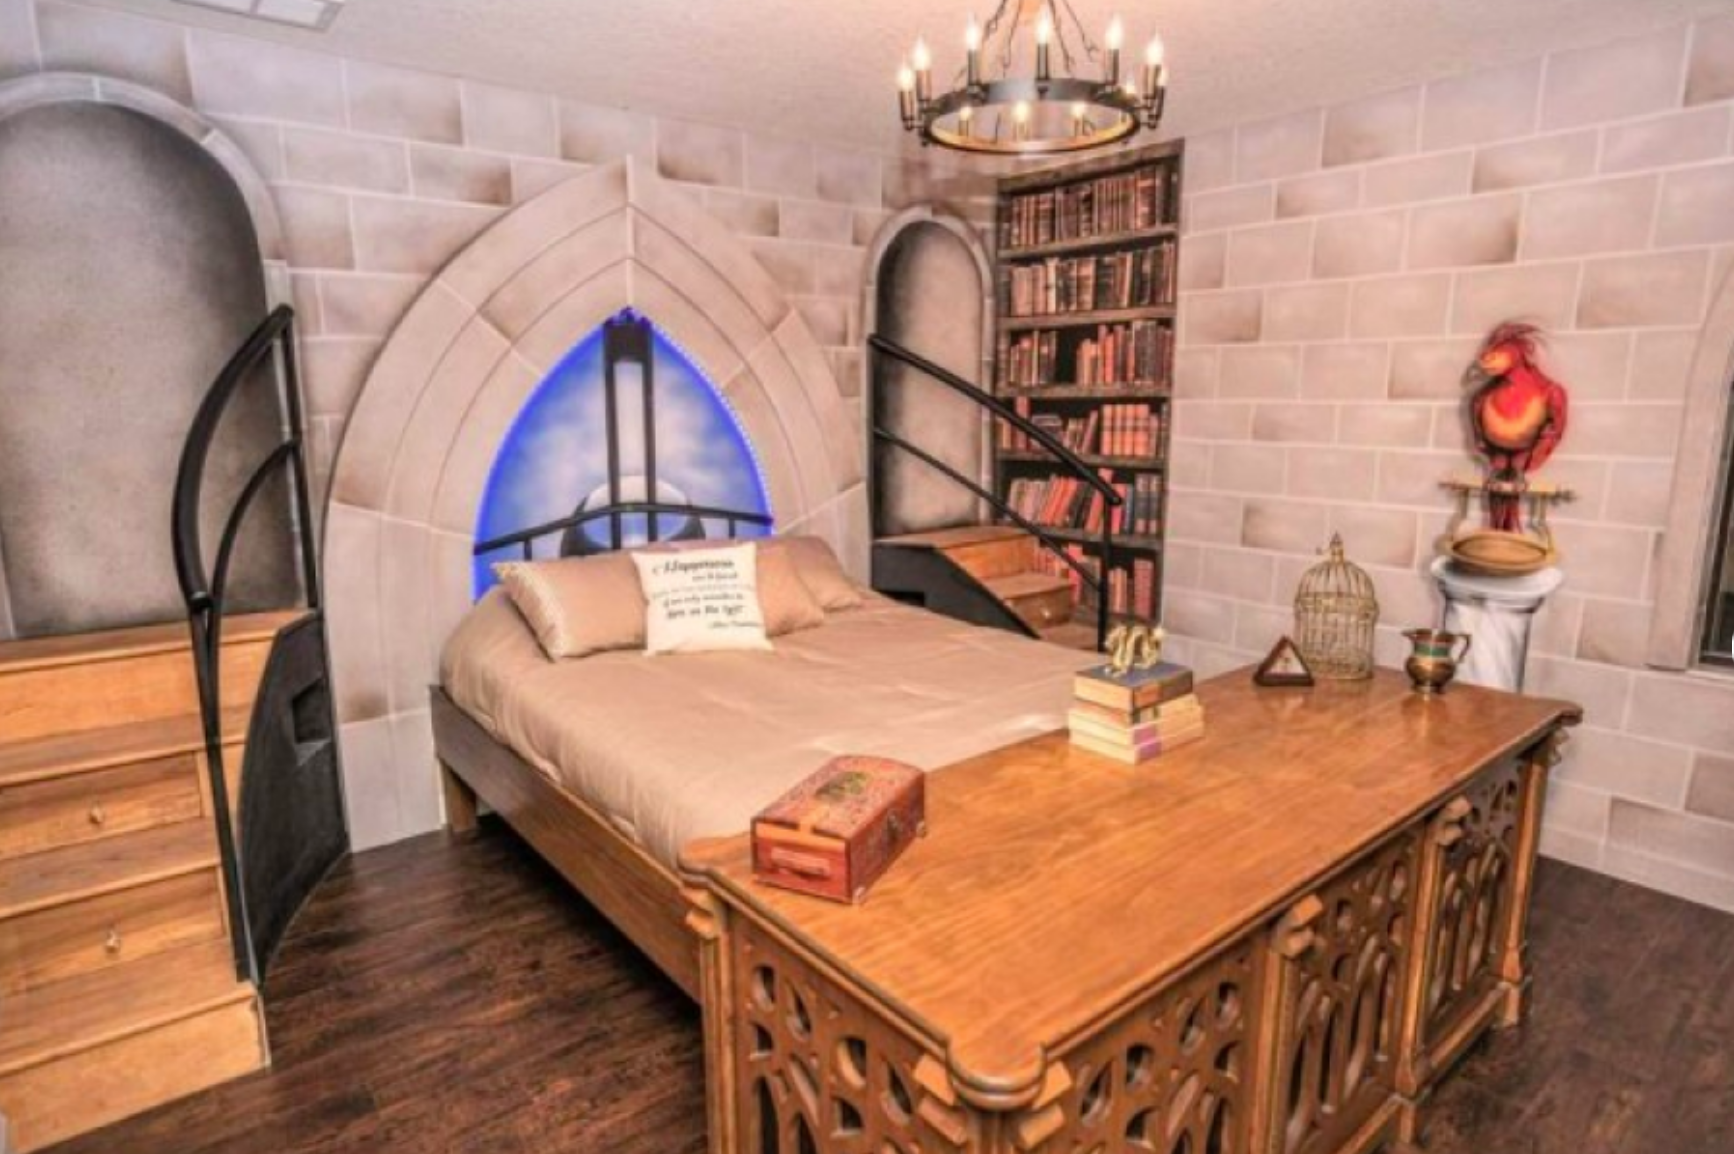 Ha aperto l'albergo ispirato a Harry Potter | Darlin Magazine